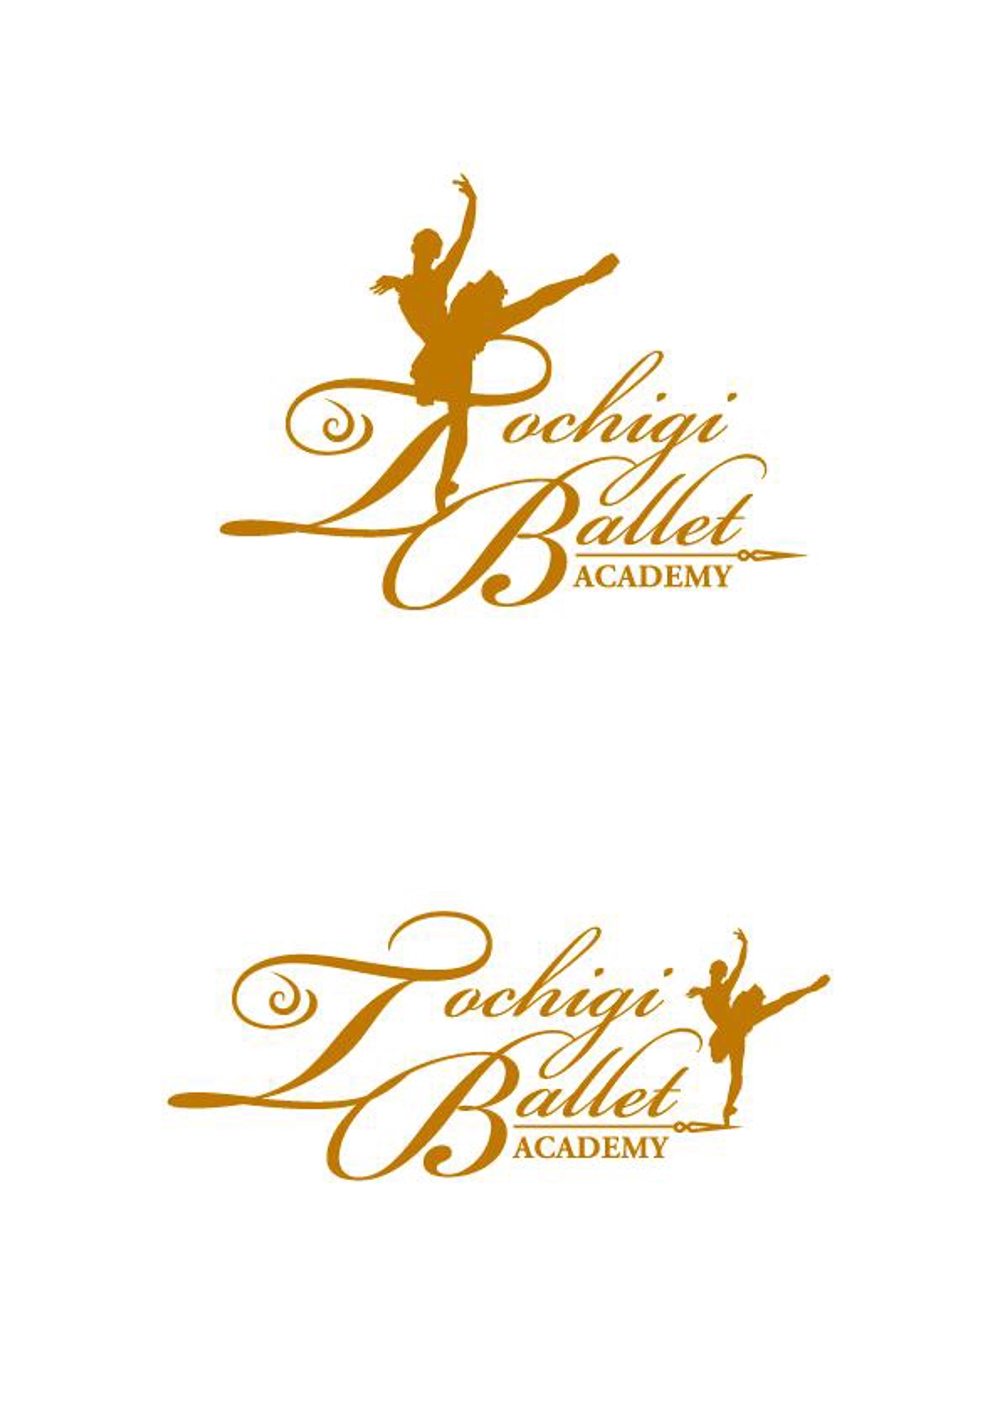 バレエ教室「とちぎバレエアカデミー」のロゴ